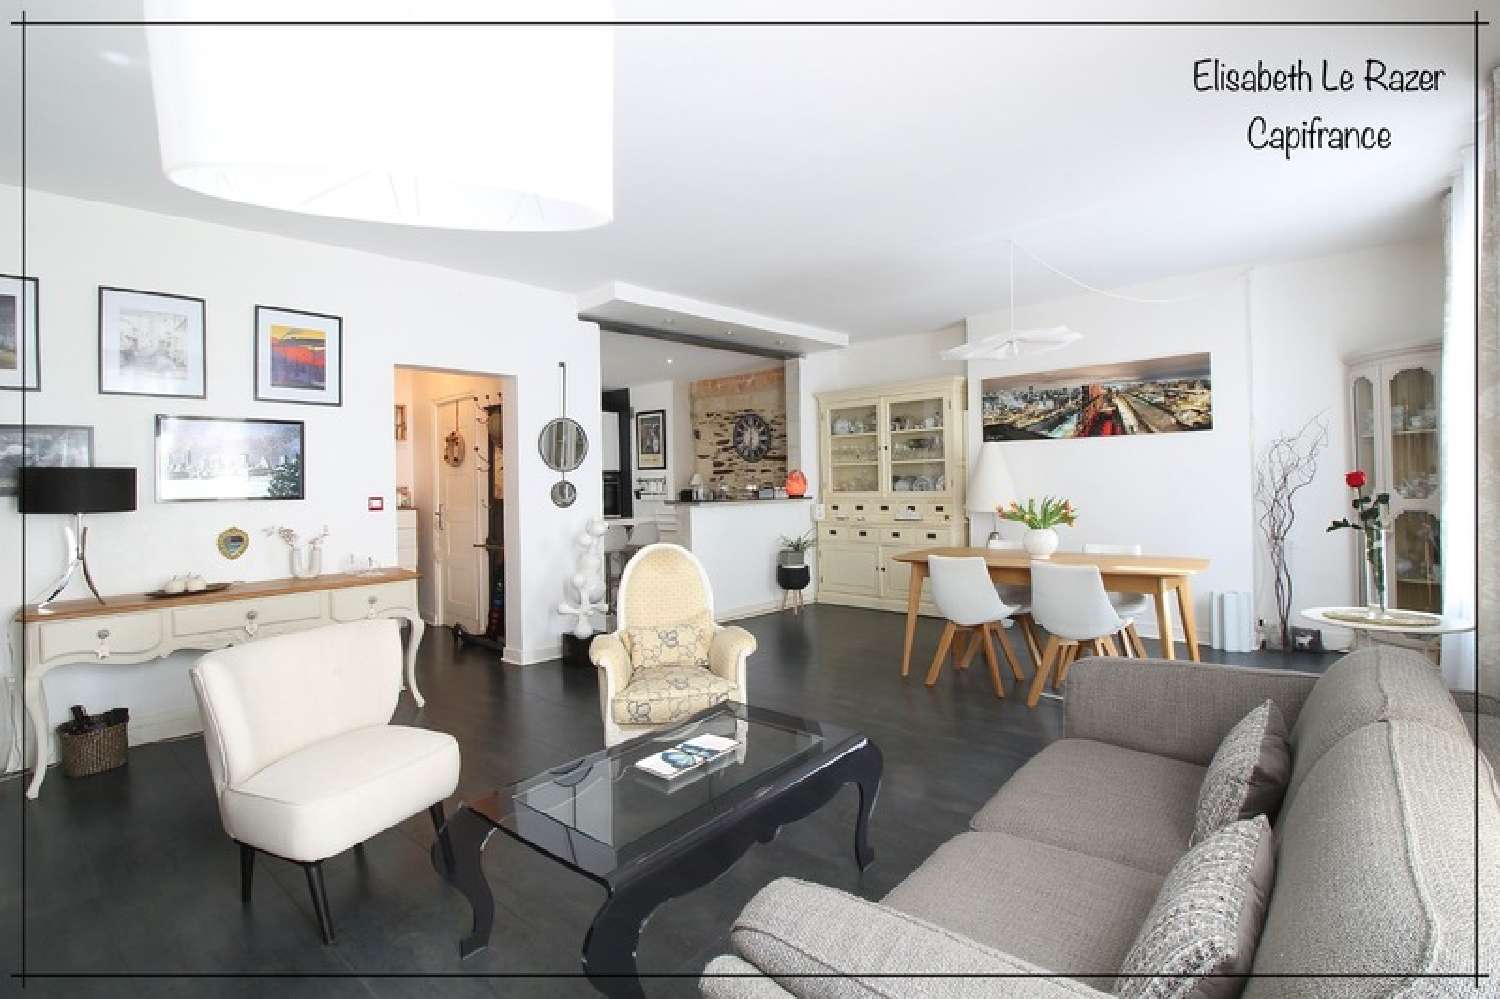  for sale apartment Angers 49100 Maine-et-Loire 1